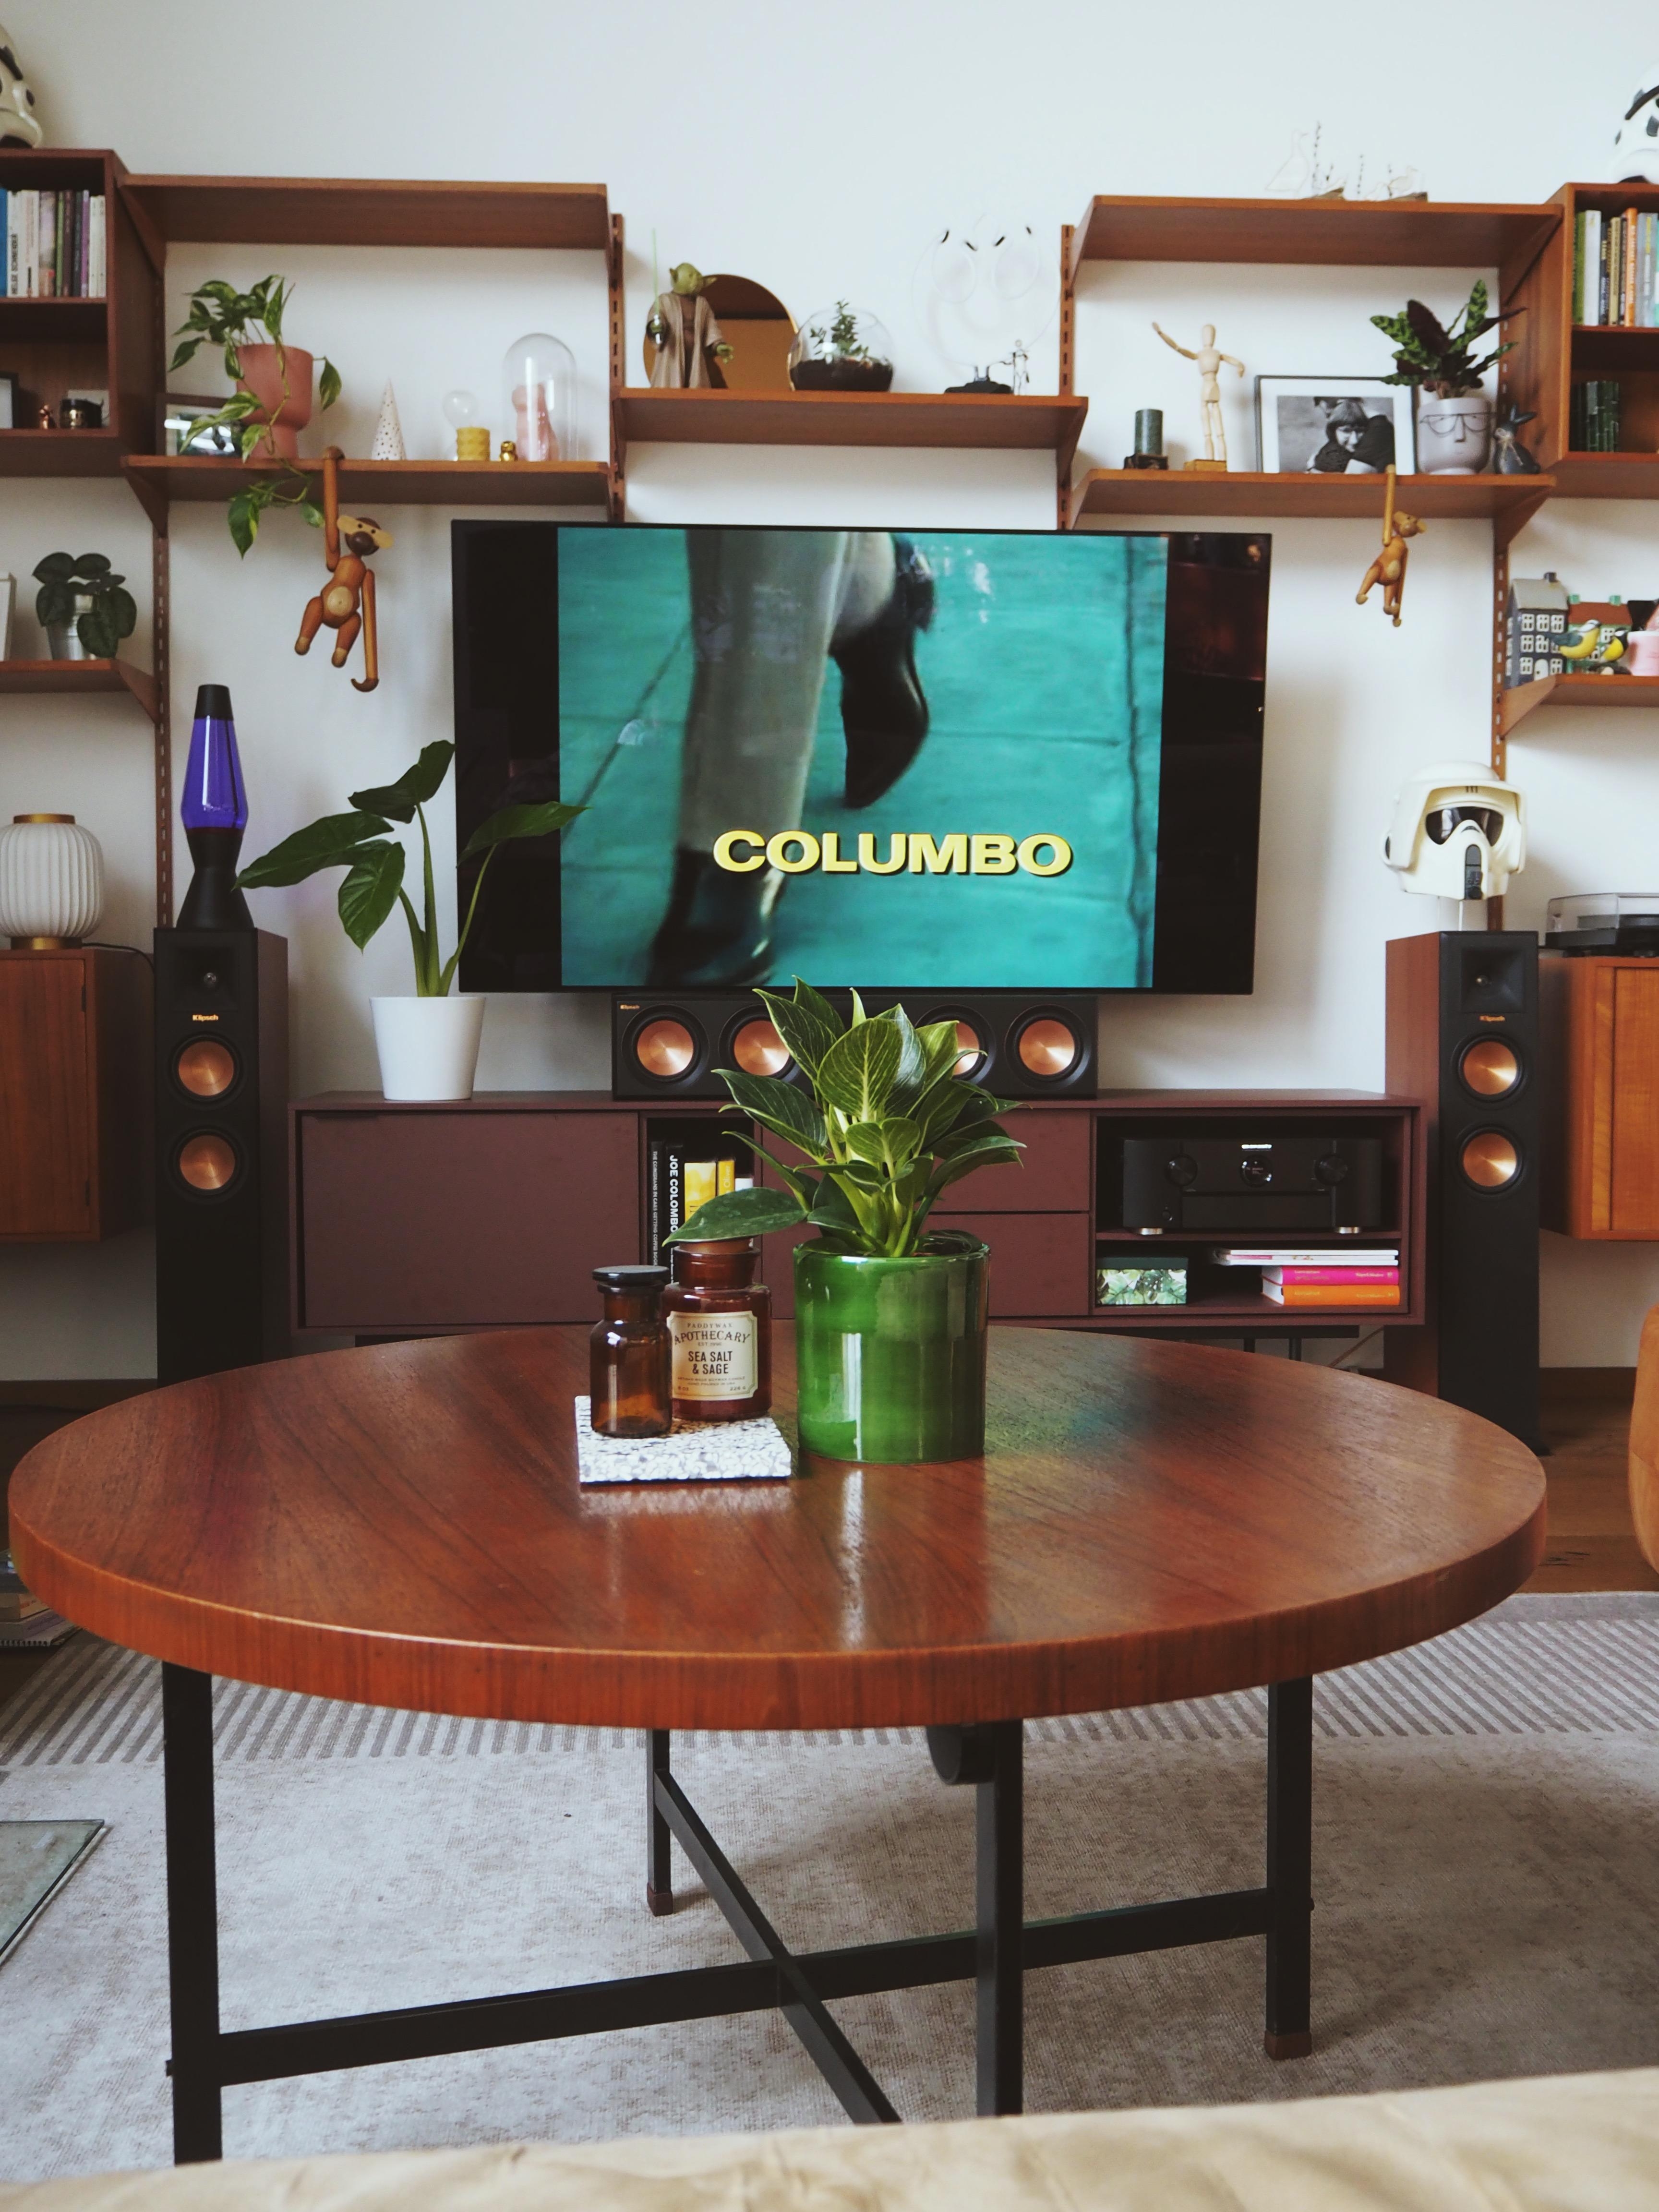 "Nur wir zwei, wie im Traum und Columbo schauen" - Wanda #micentury #vintagefurniture #livingroom #wohnzimmer